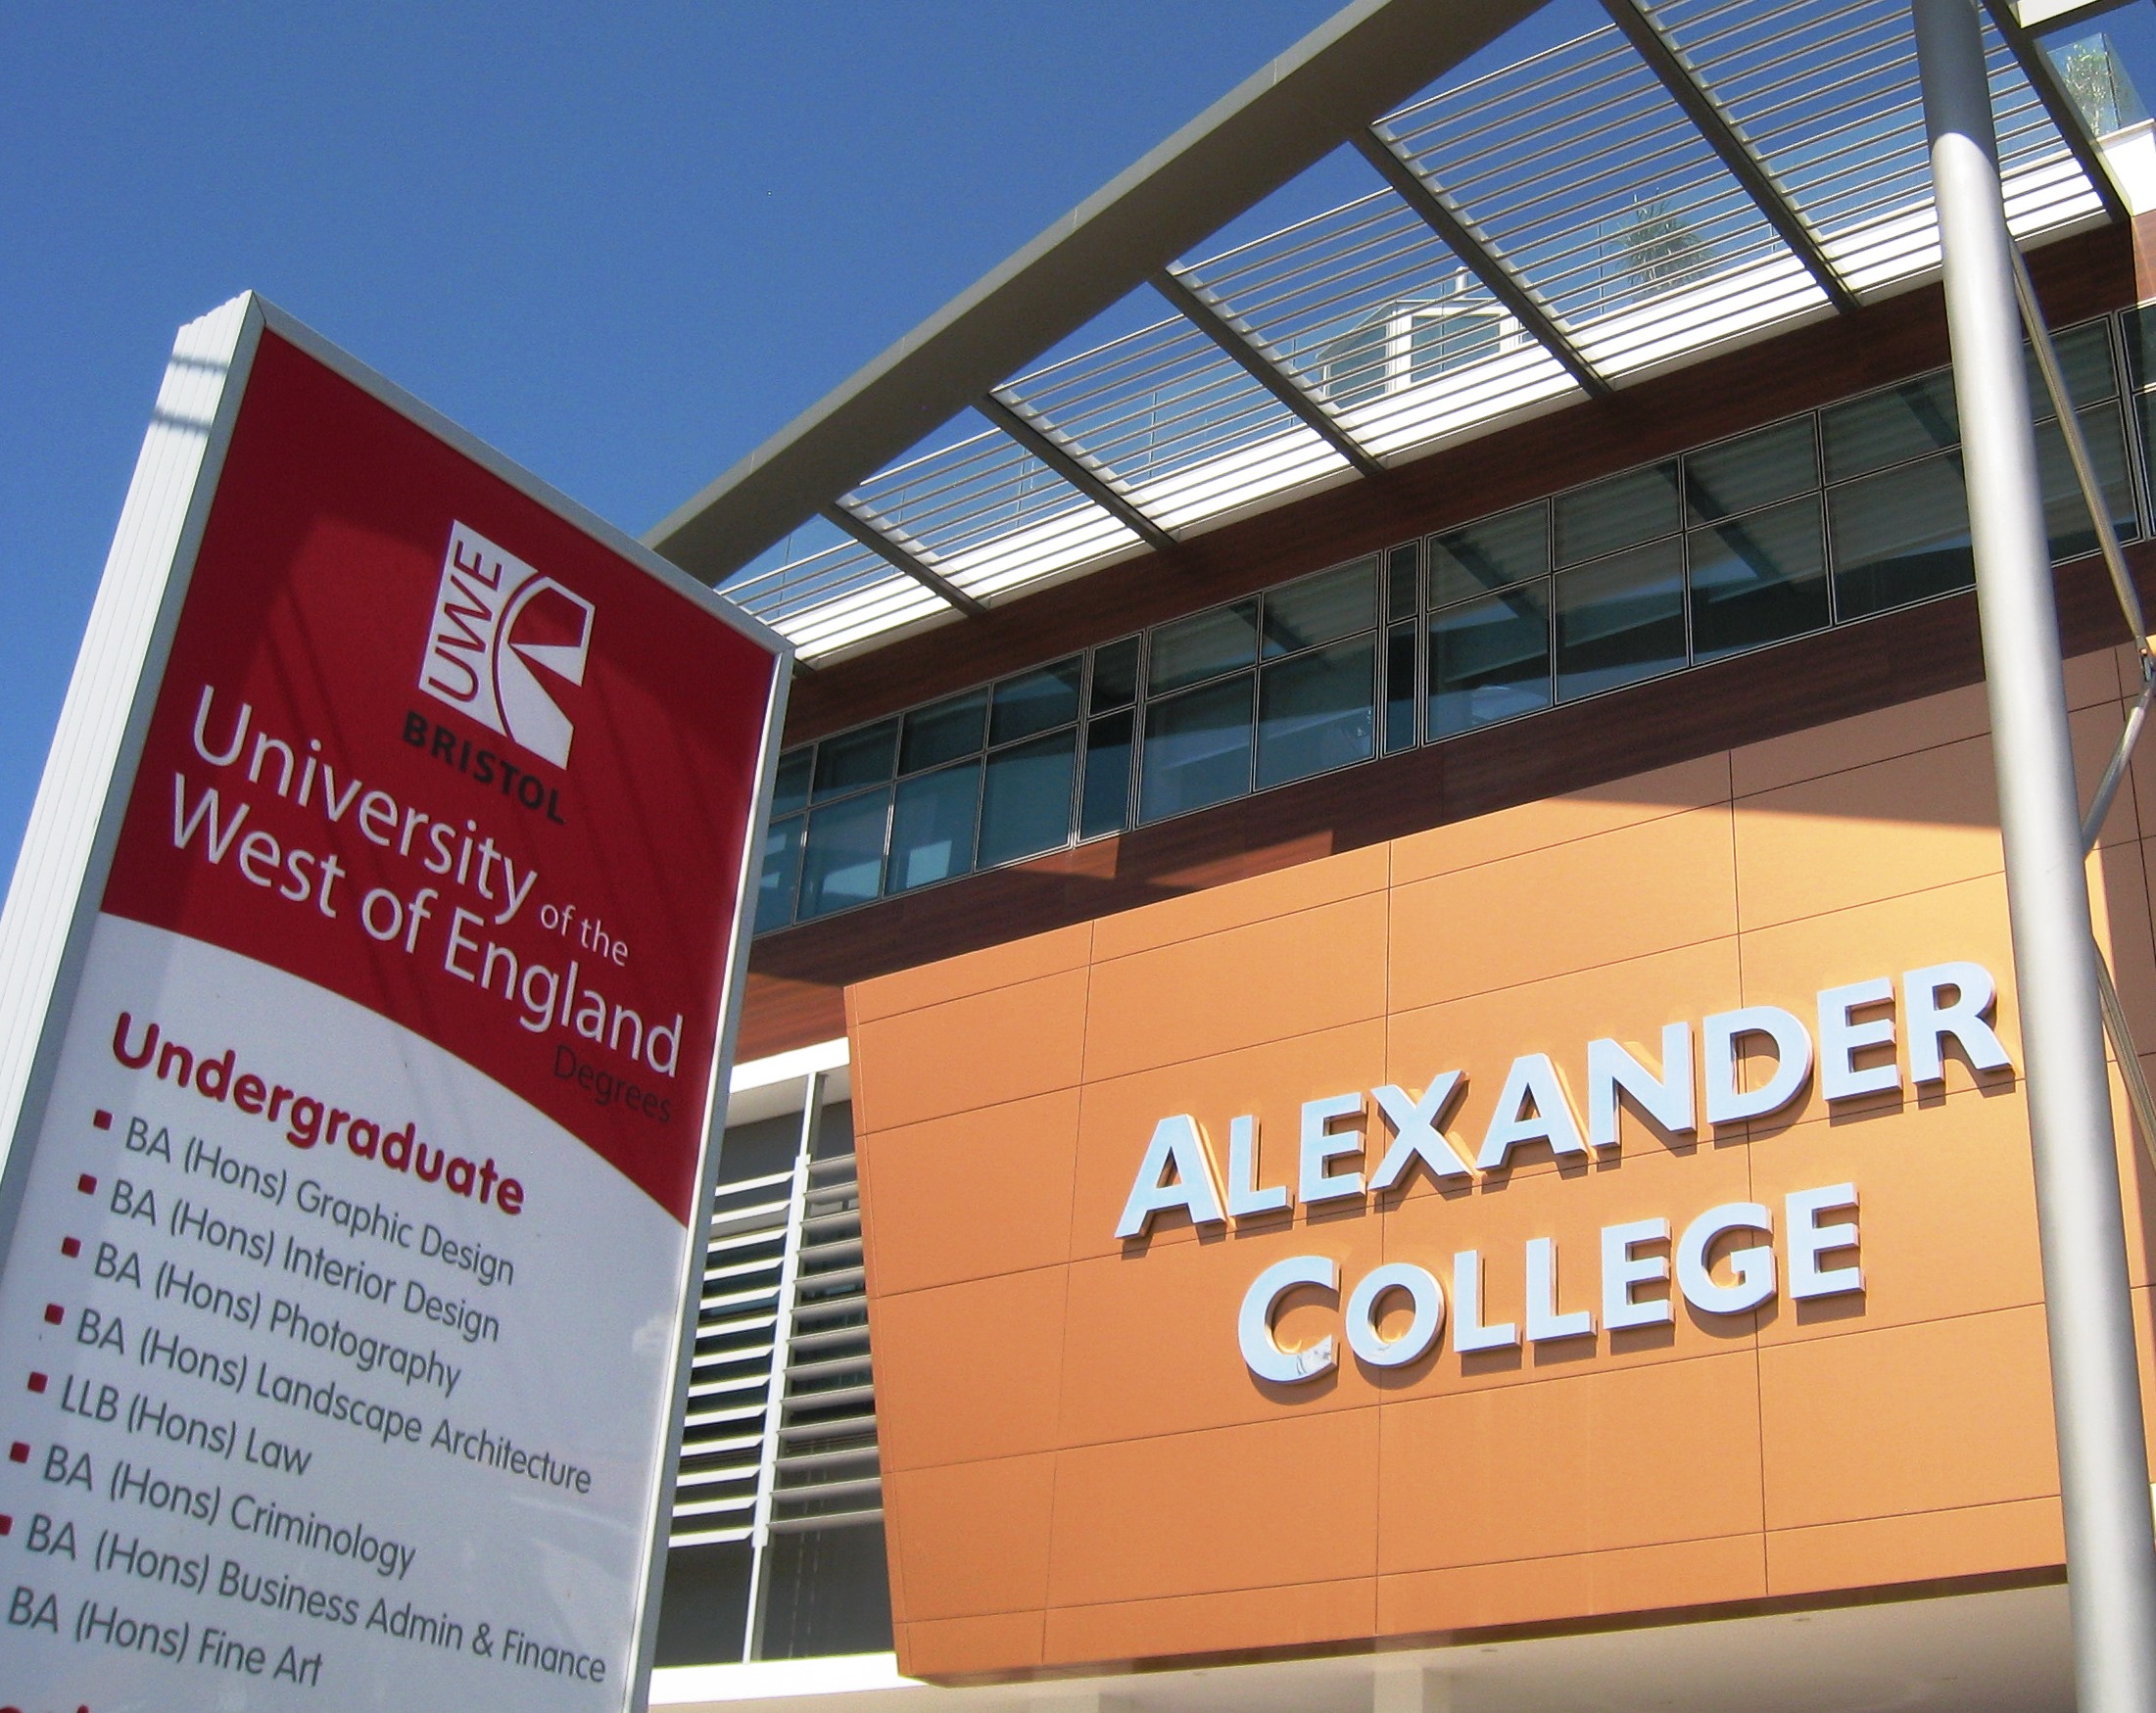 Το Alexander College σε συνεργασία με το Γενικό Νοσοκομείο Λάρνακας διοργανώνουν εθελοντική αιμοδοσία